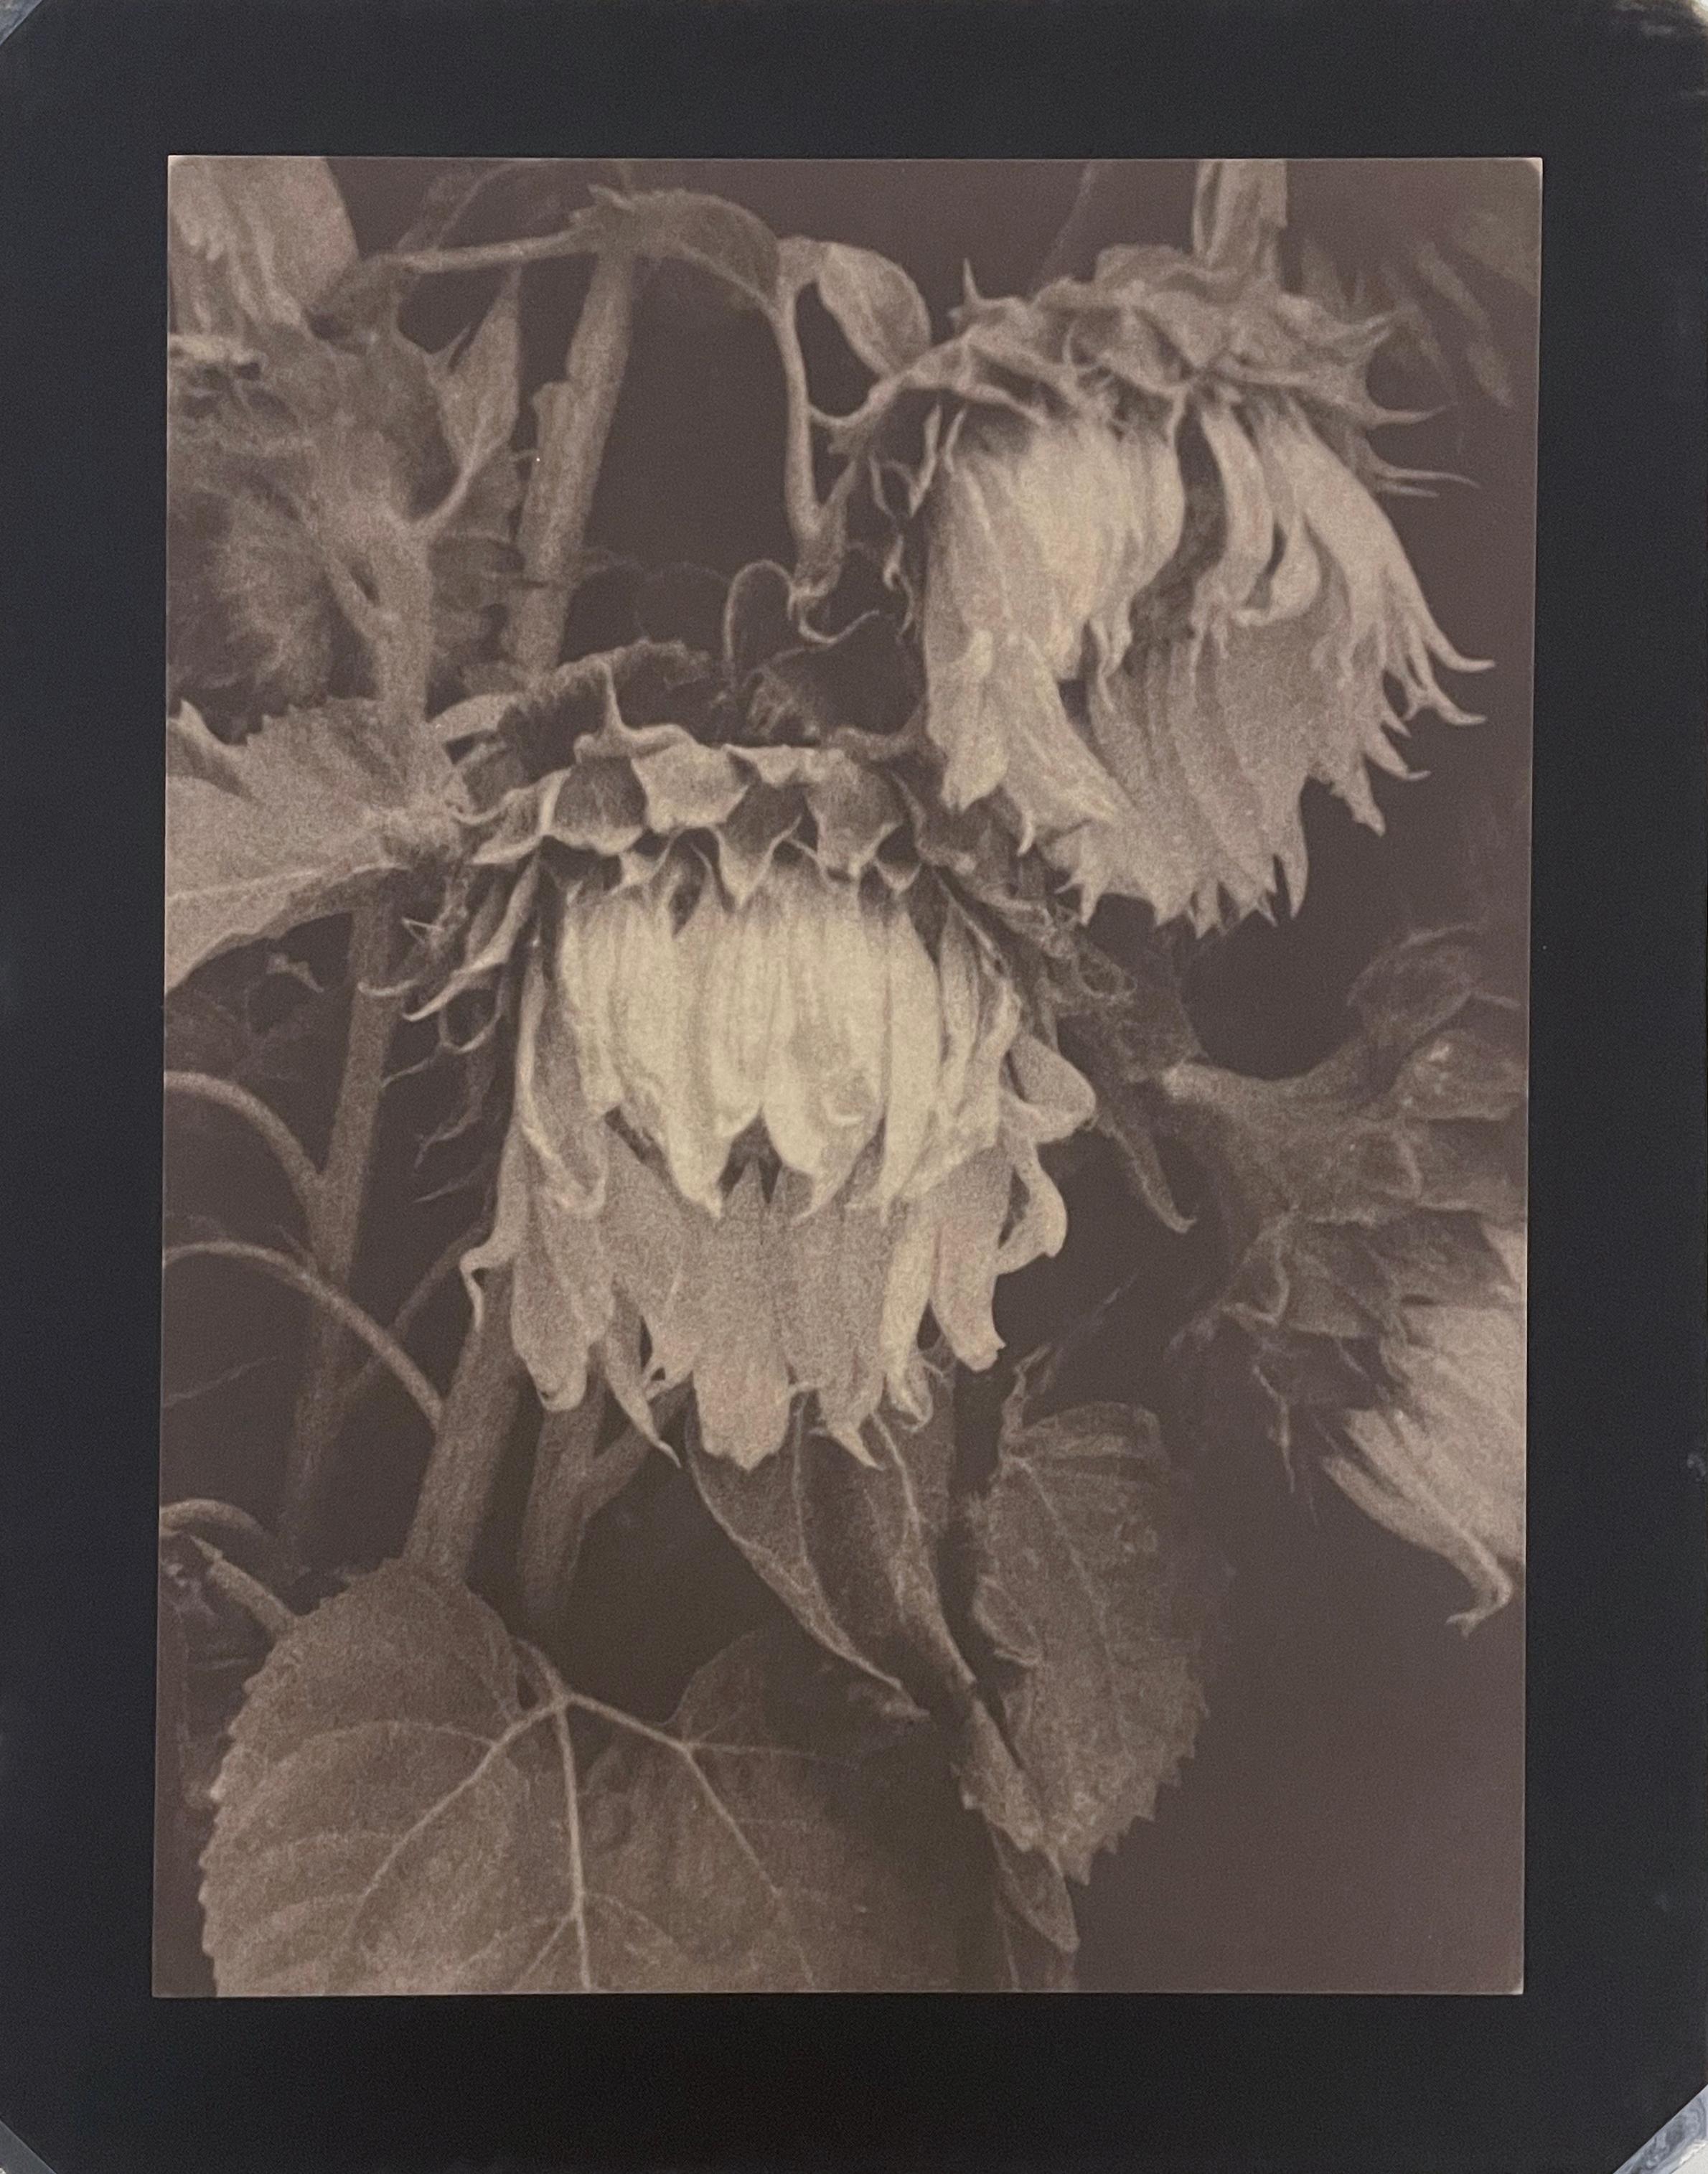 Sonnenblumen von Jan van Leeuwen, 1995, Kallitype, Stilllebenfotografie (Zeitgenössisch), Photograph, von Jan Van Leeuwen